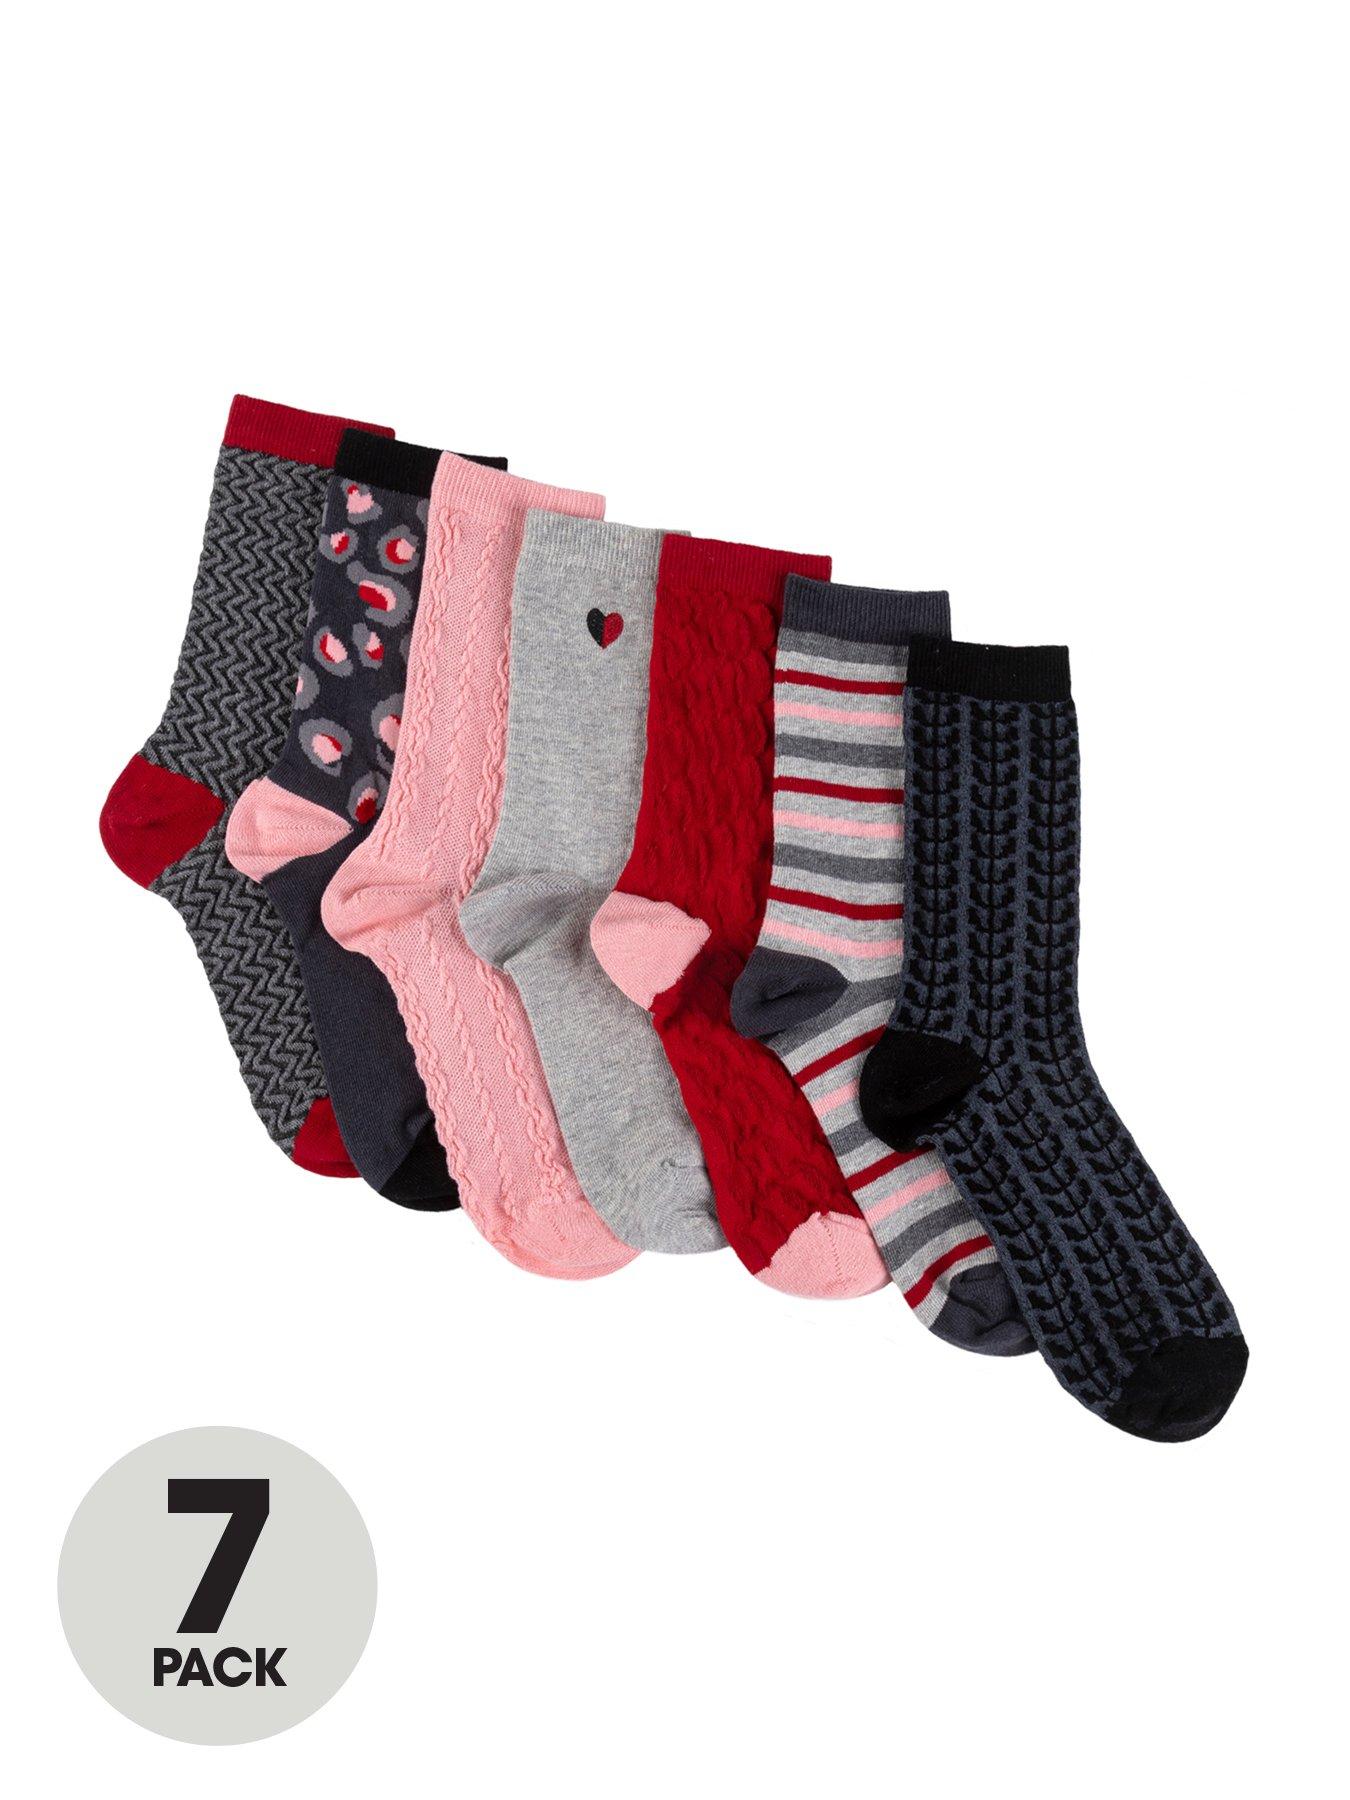  7 Pack Days Of Week Socks - Multi